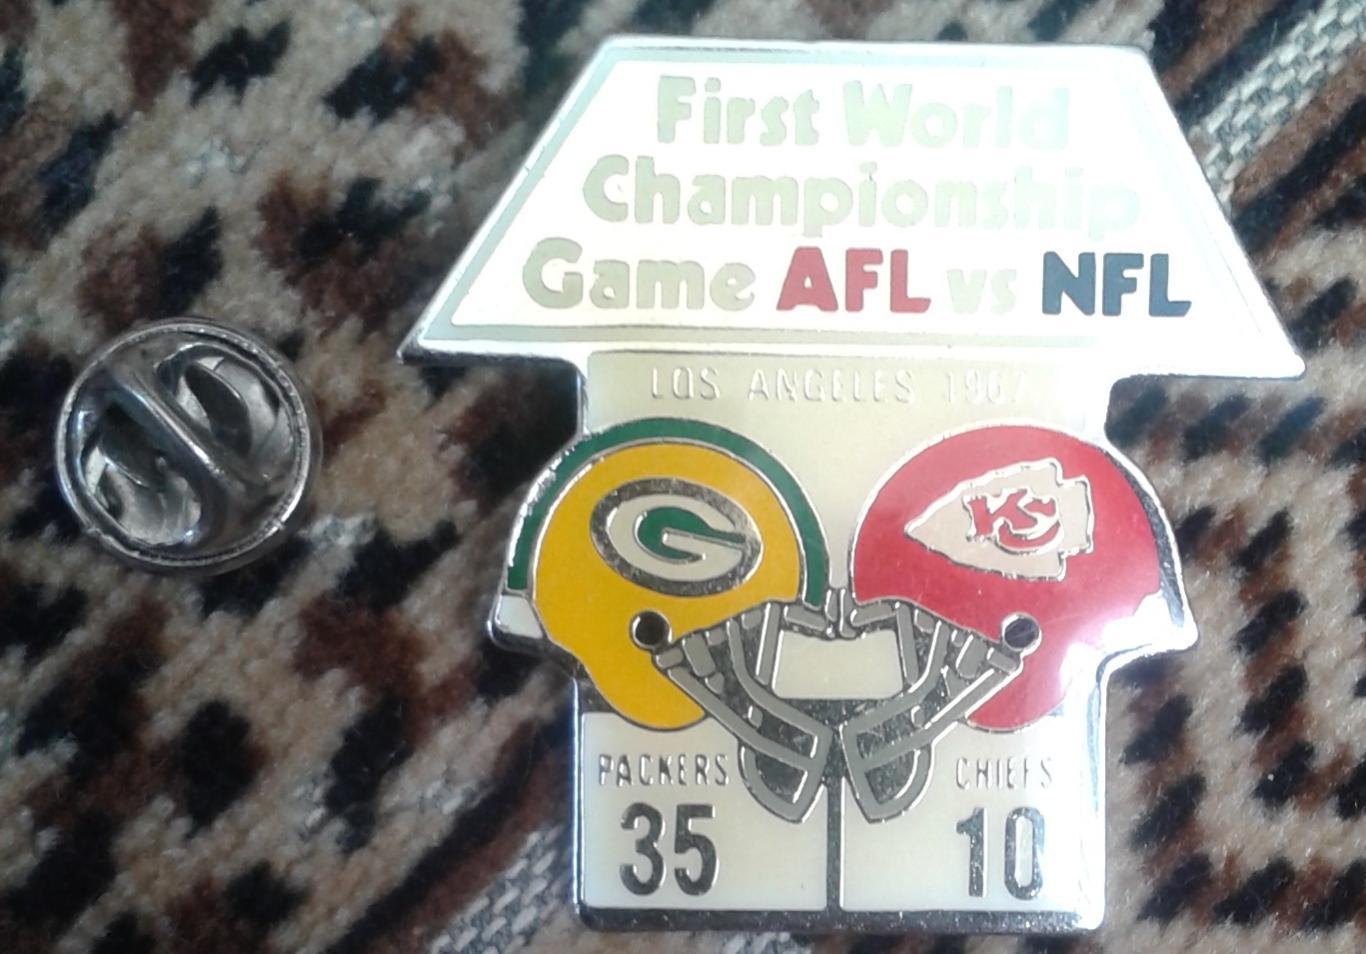 Значок Американский футбол. First World Championship Game AFL vs NFL 1976 3